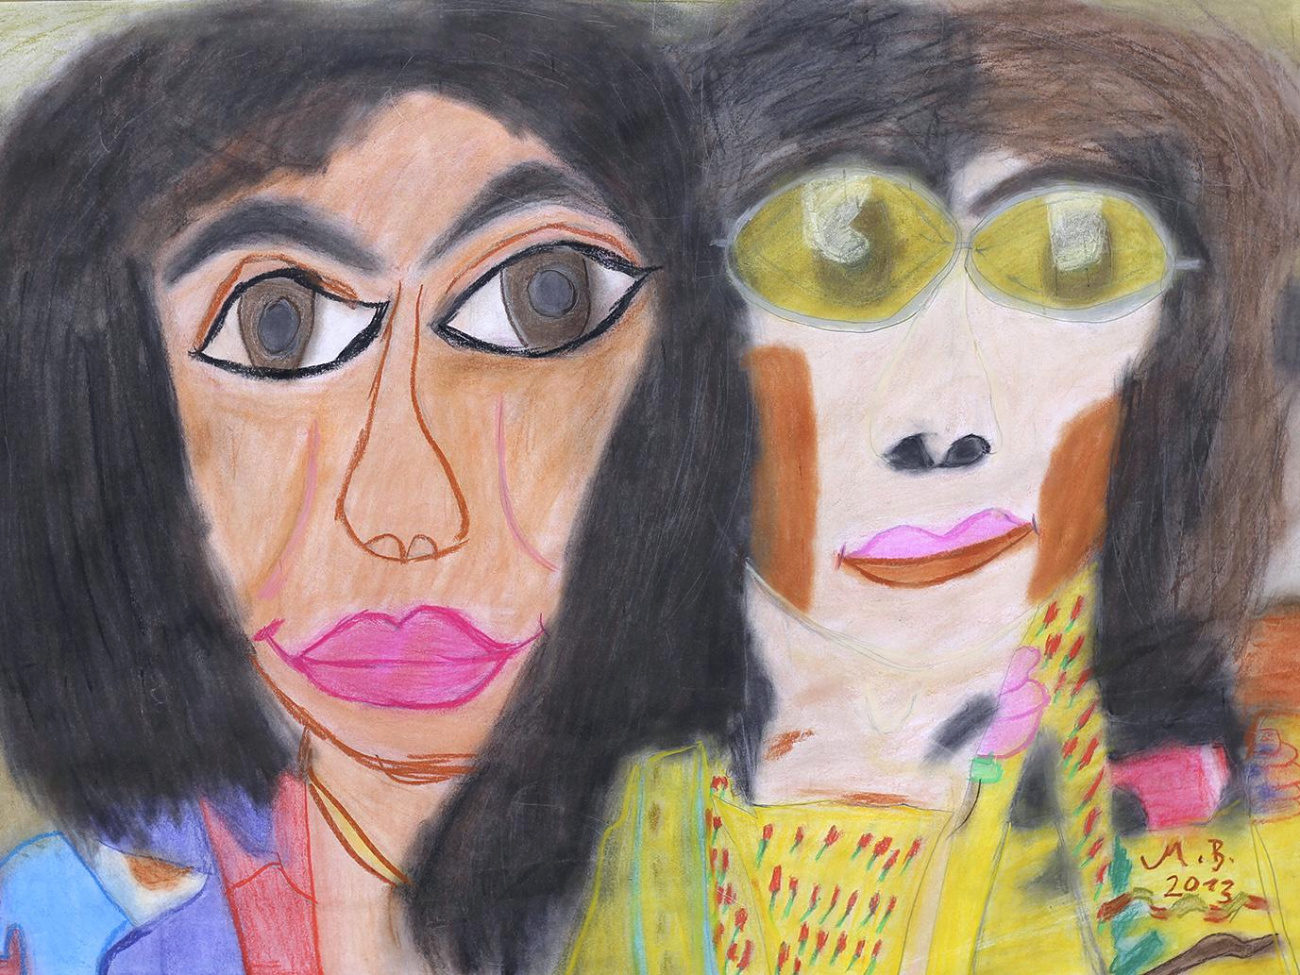 Die Künstlerin Martina Beneke hat Yoko Ono und John Lennon in abstrakter Form mit Pastellkreide auf Papier gemalt.